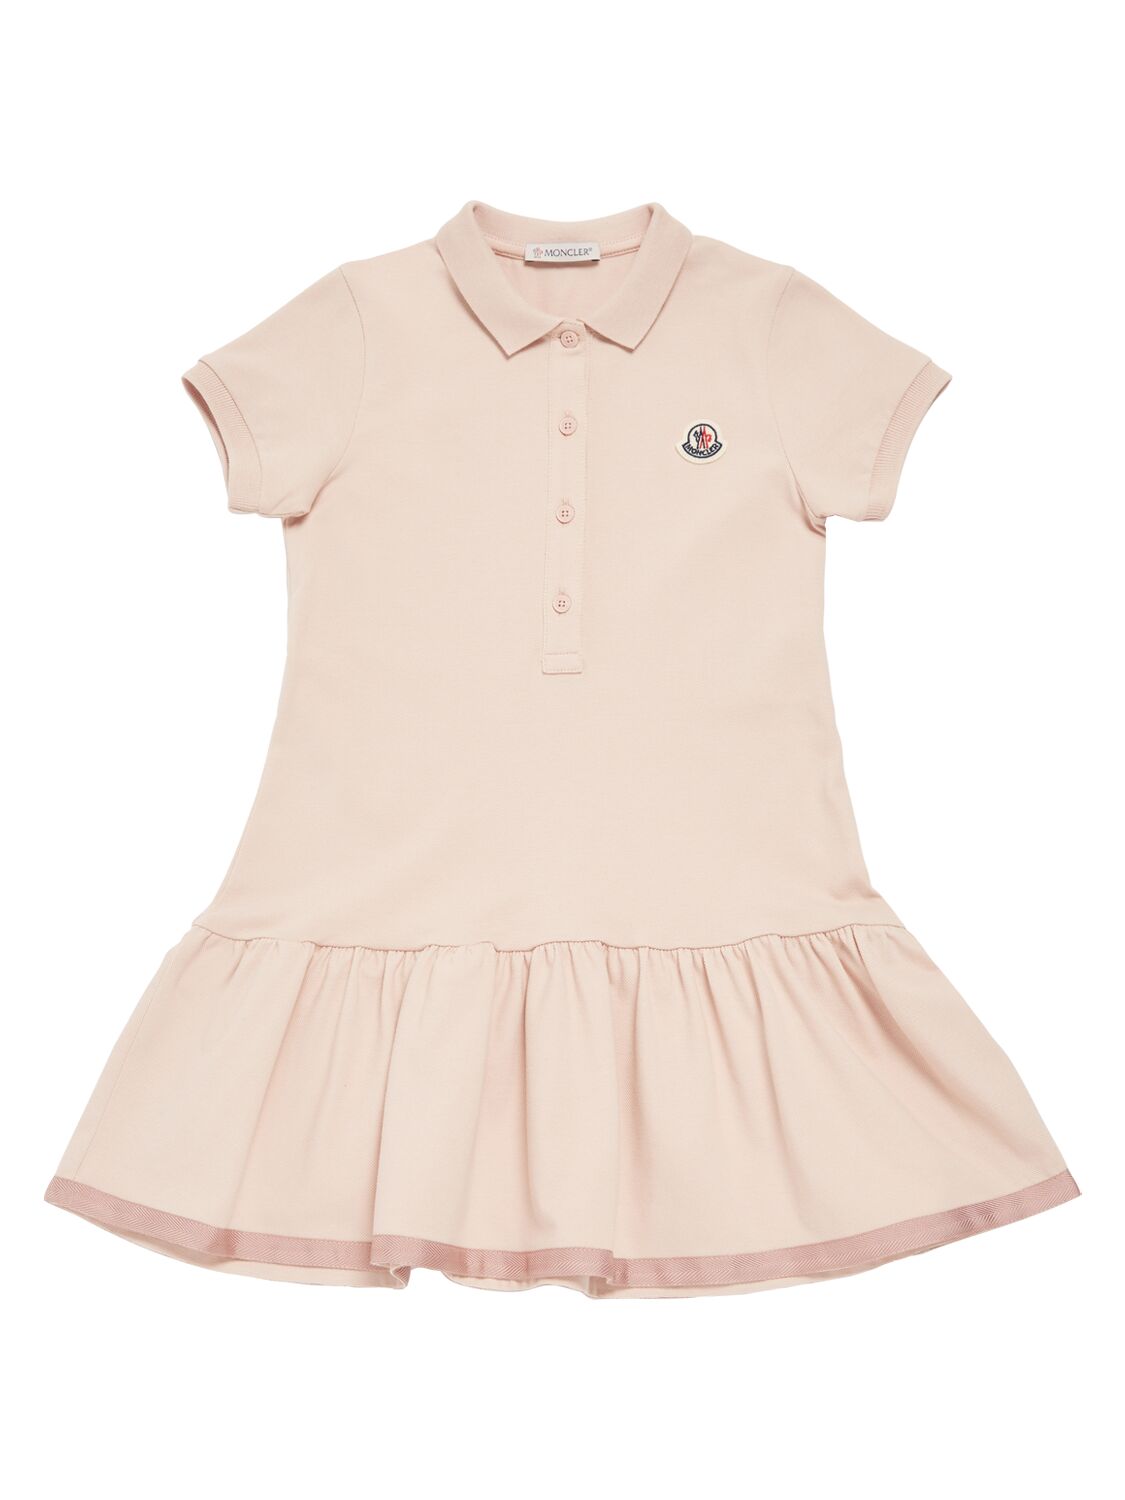 Moncler Kids' Little Girl's & Girl's Polo Dress In Pink